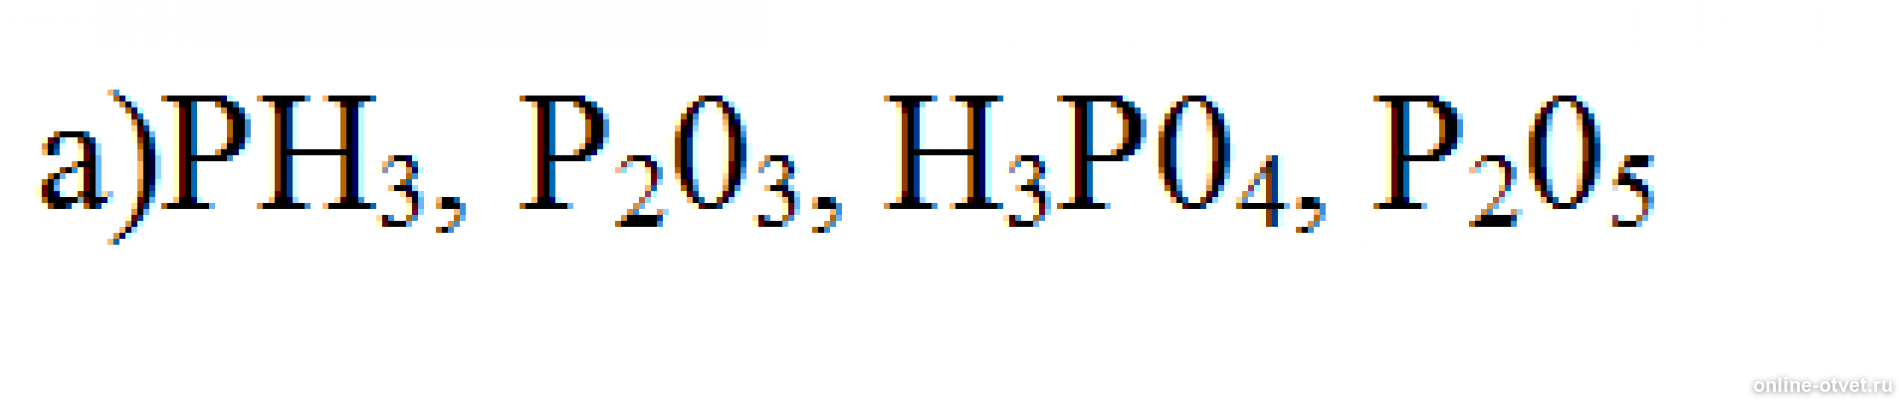 Определите степени окисления элементов sio2. Определите степень окисления элементов ph3. Определите степень окисления элементов в соединениях ph3. P203 химия. Определите степень окисления в соединениях ph3 nabr, co2, kclo3.